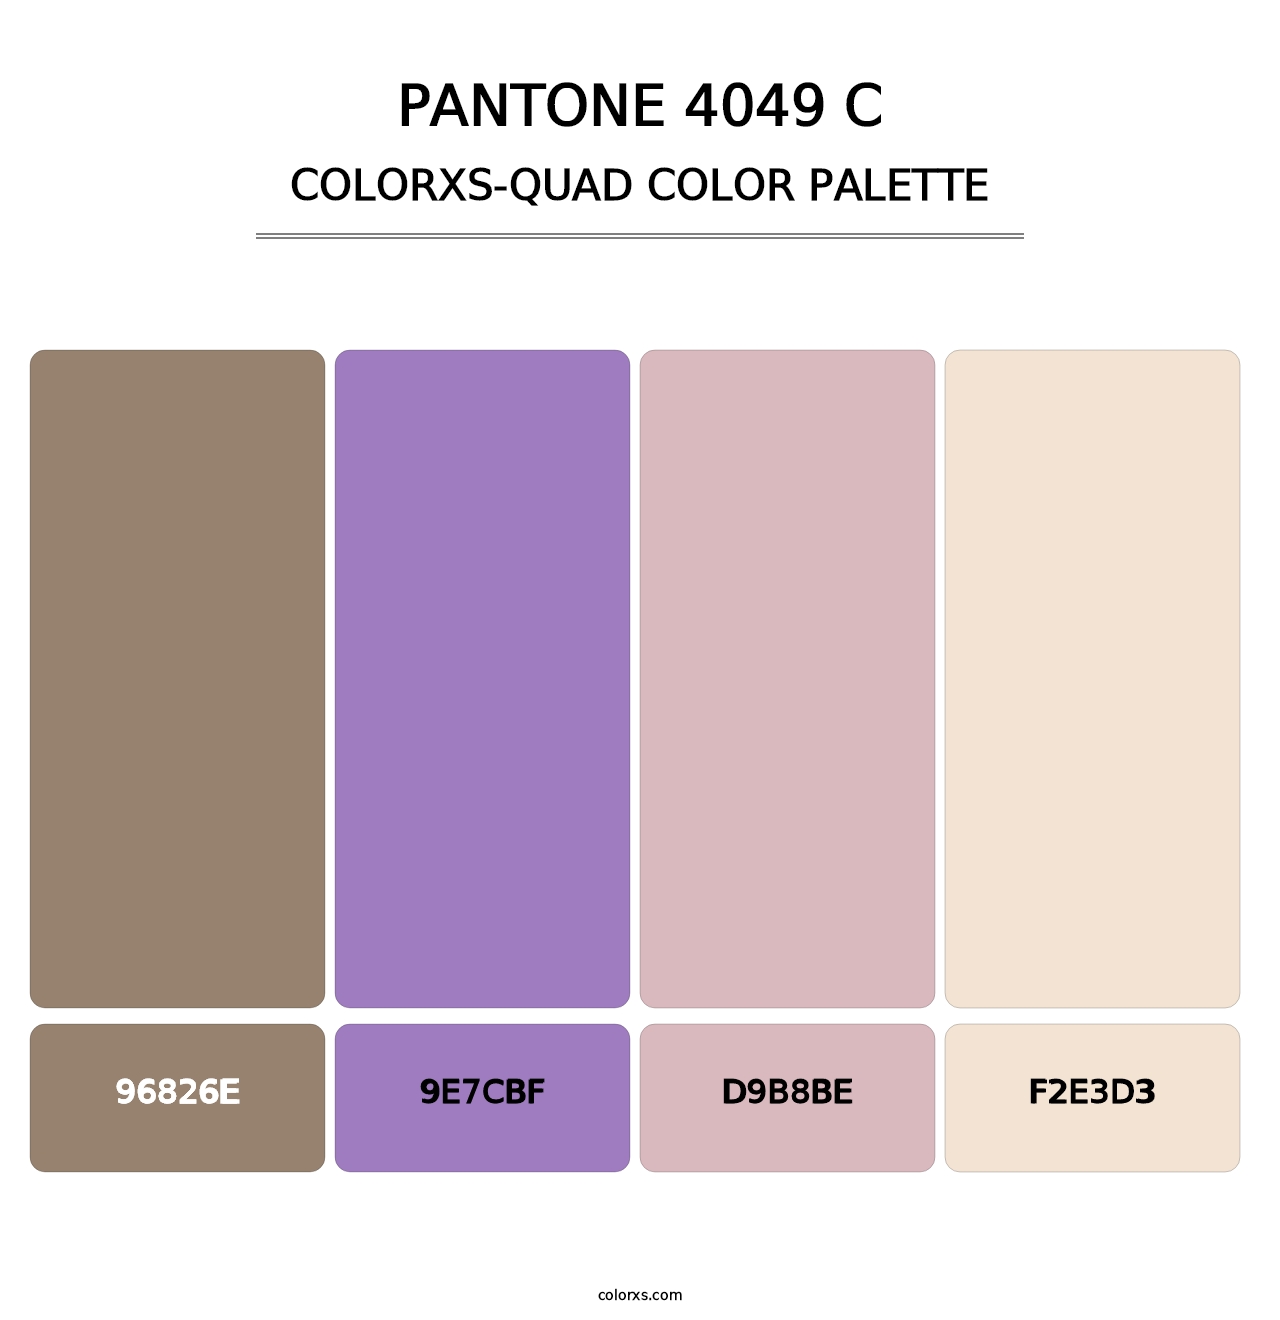 PANTONE 4049 C - Colorxs Quad Palette